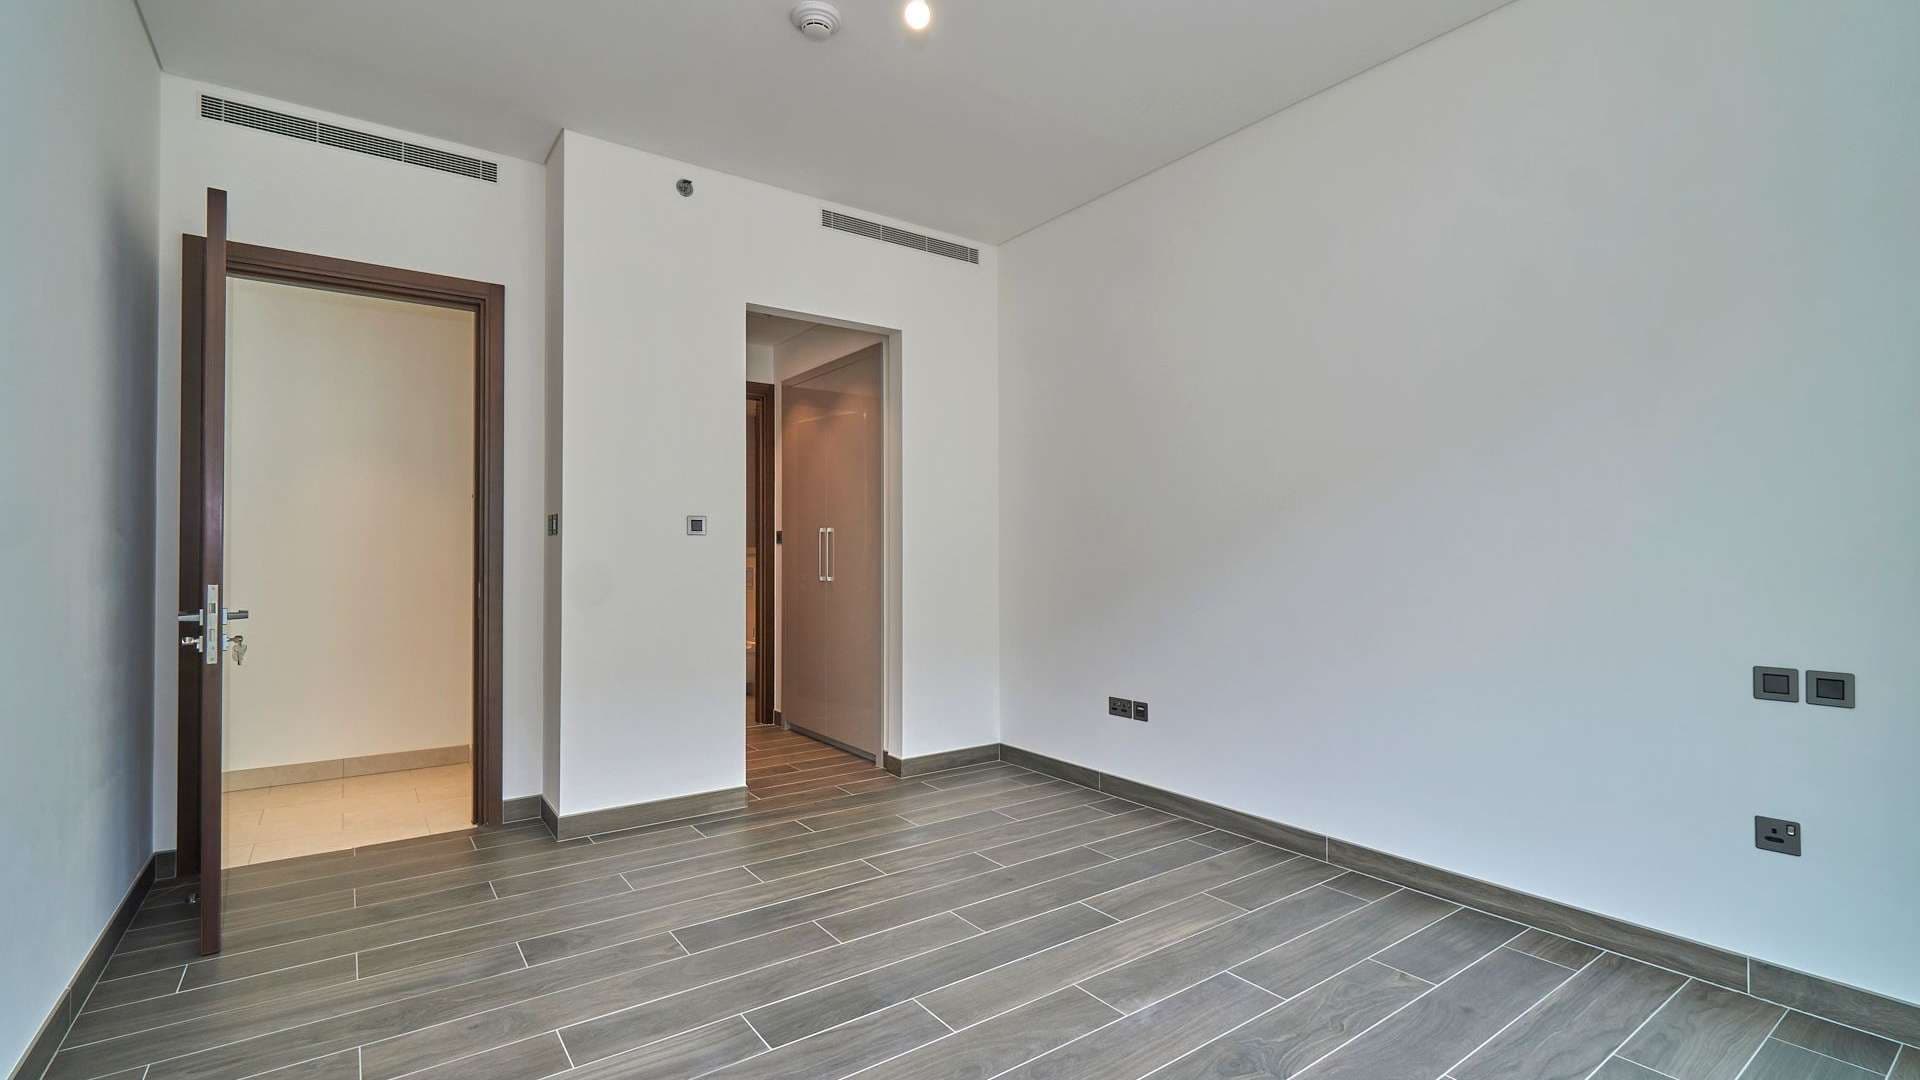 2 Bedroom Apartment For Rent Sobha Hartland Lp09008 2f734bda24de3e00.jpeg